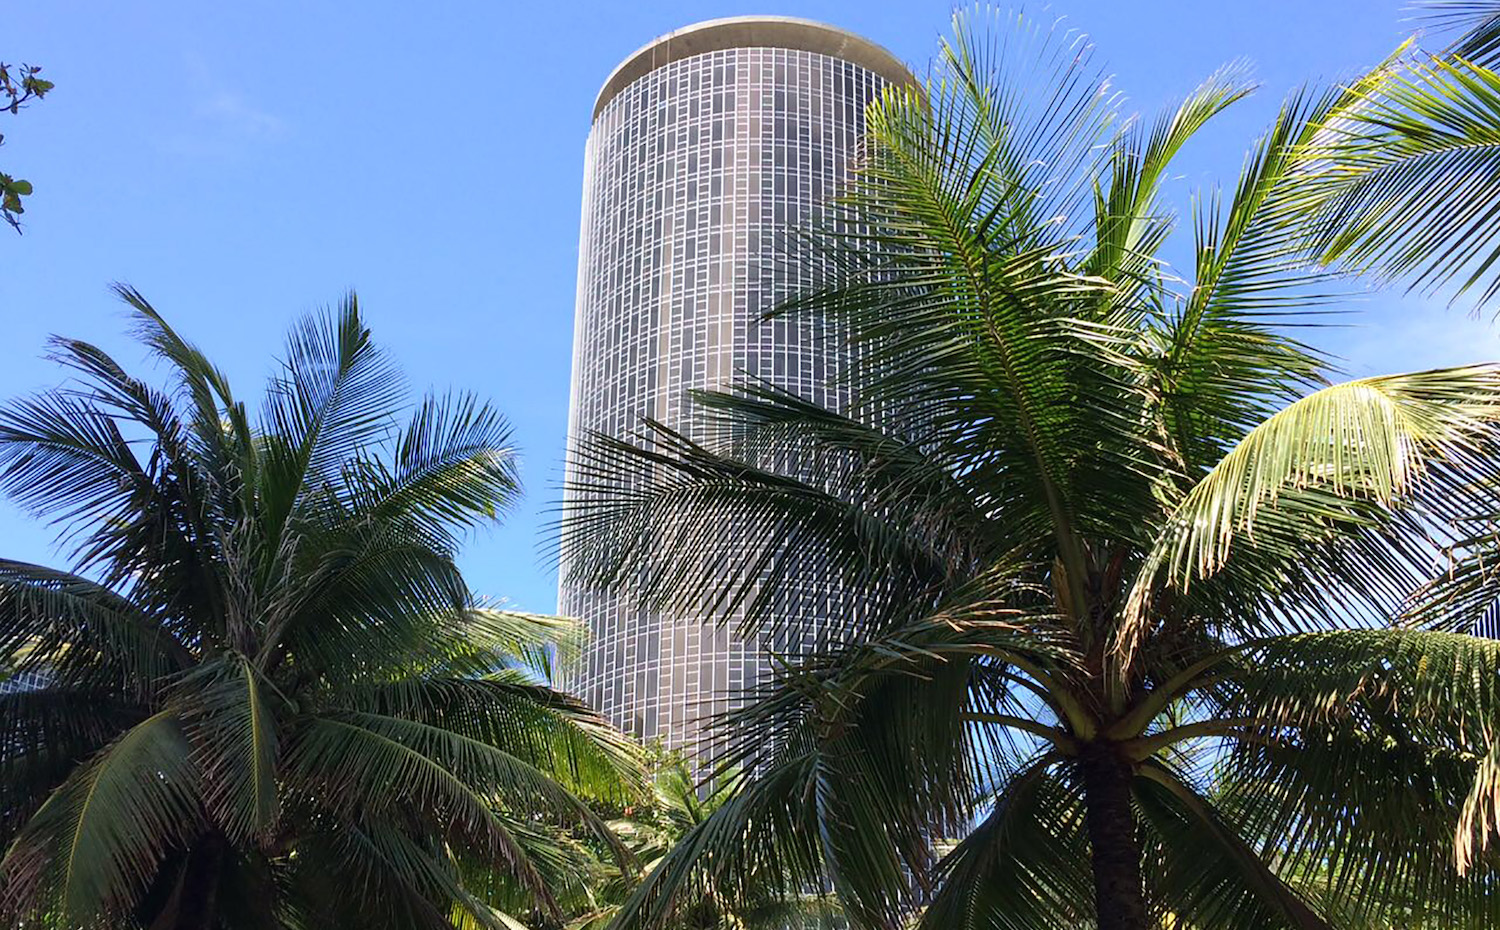 El hotel Nacional de Niemeyer se eleva 33 pisos. Su azotea sirve de helipuerto